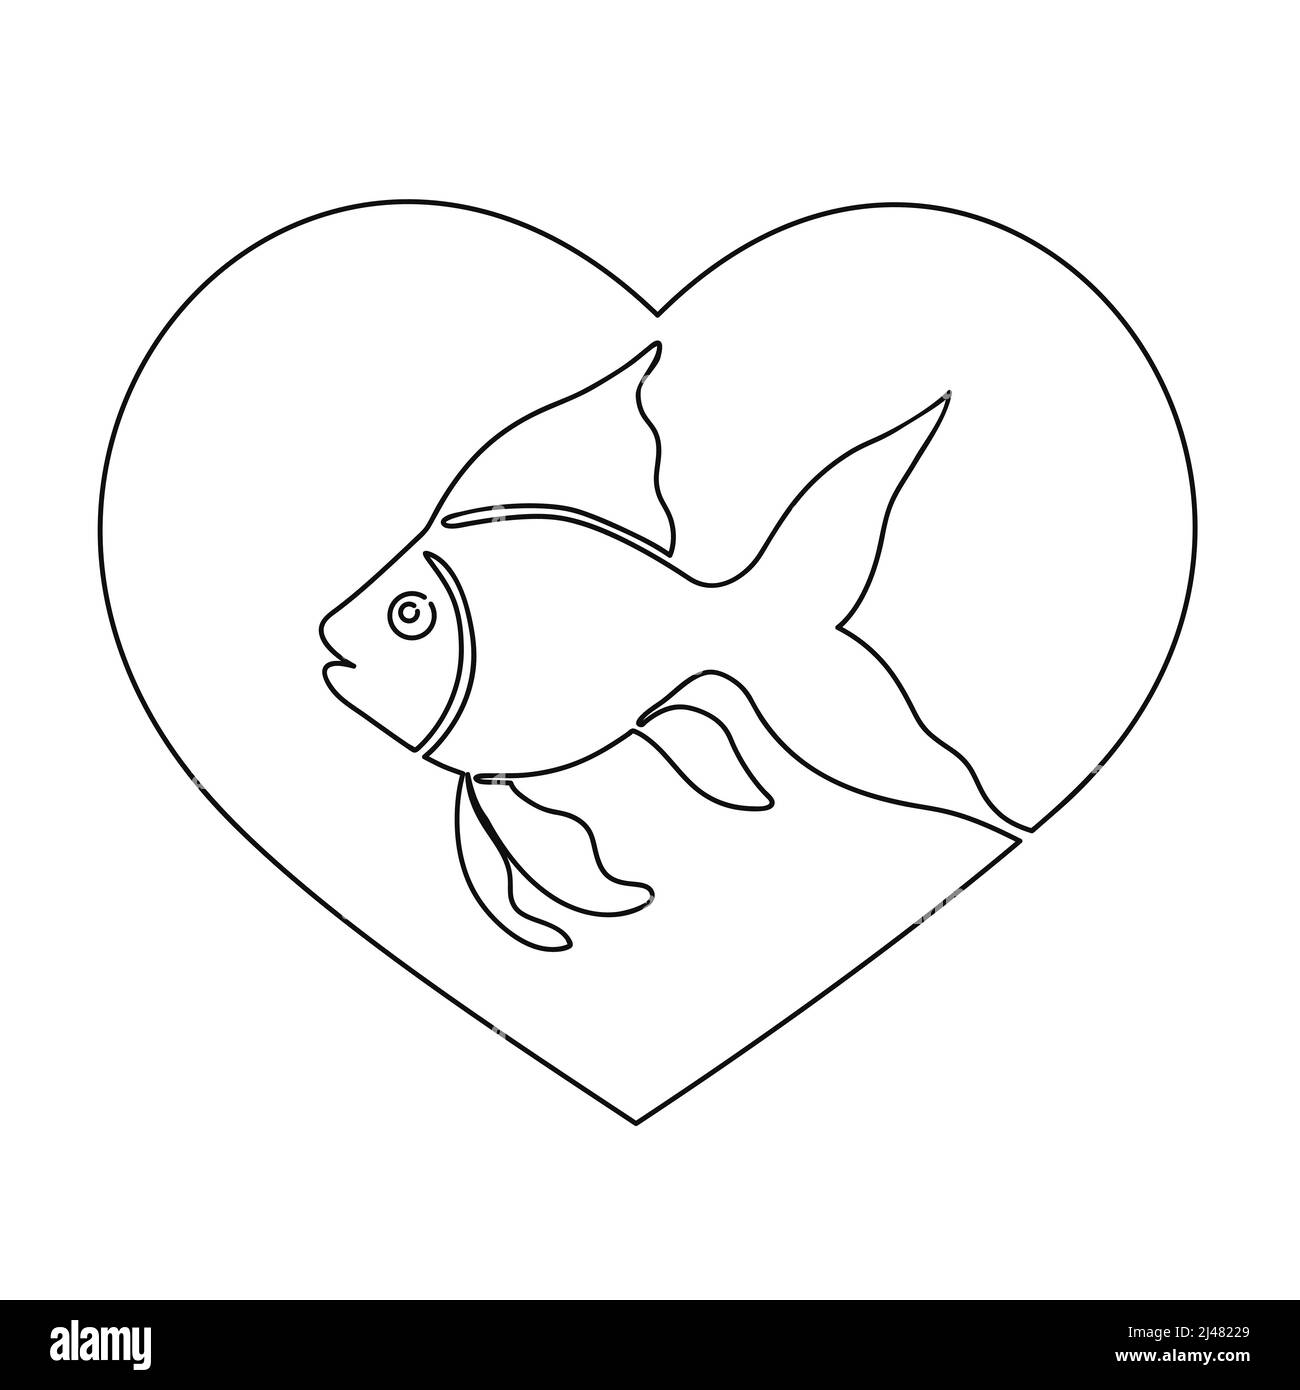 Der Fisch ist in das Herz eingeschrieben. In einer durchgehenden Linie auf weißem Hintergrund gezeichnet. Abbildung des isolierten Vektorgrafiken Stock Vektor